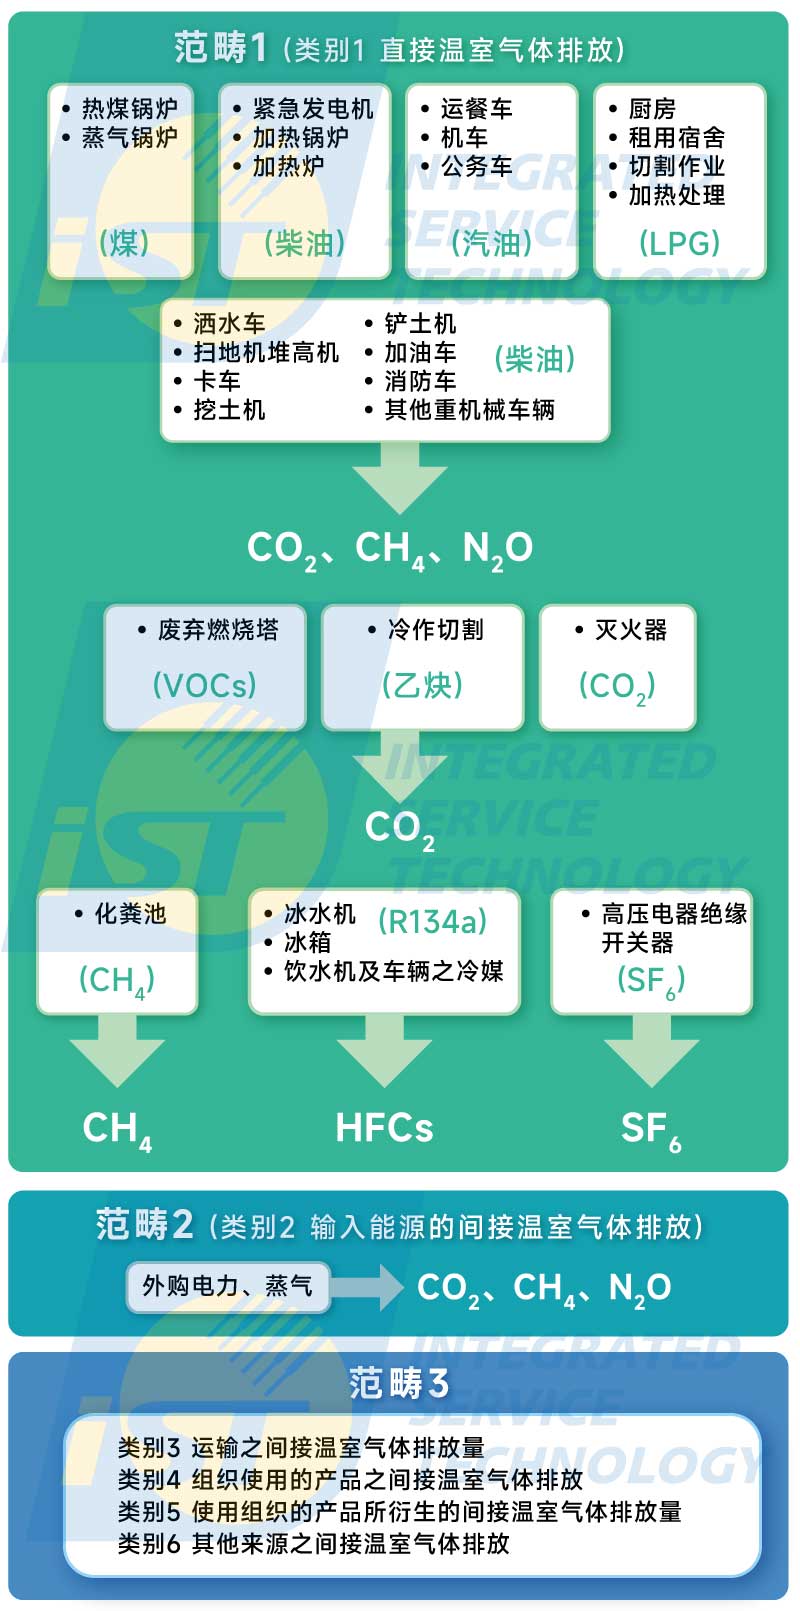 温室气体 此图亦是依据ISO 14064-1排放源的分类，但将温室气体排放区分成三大范畴说明。